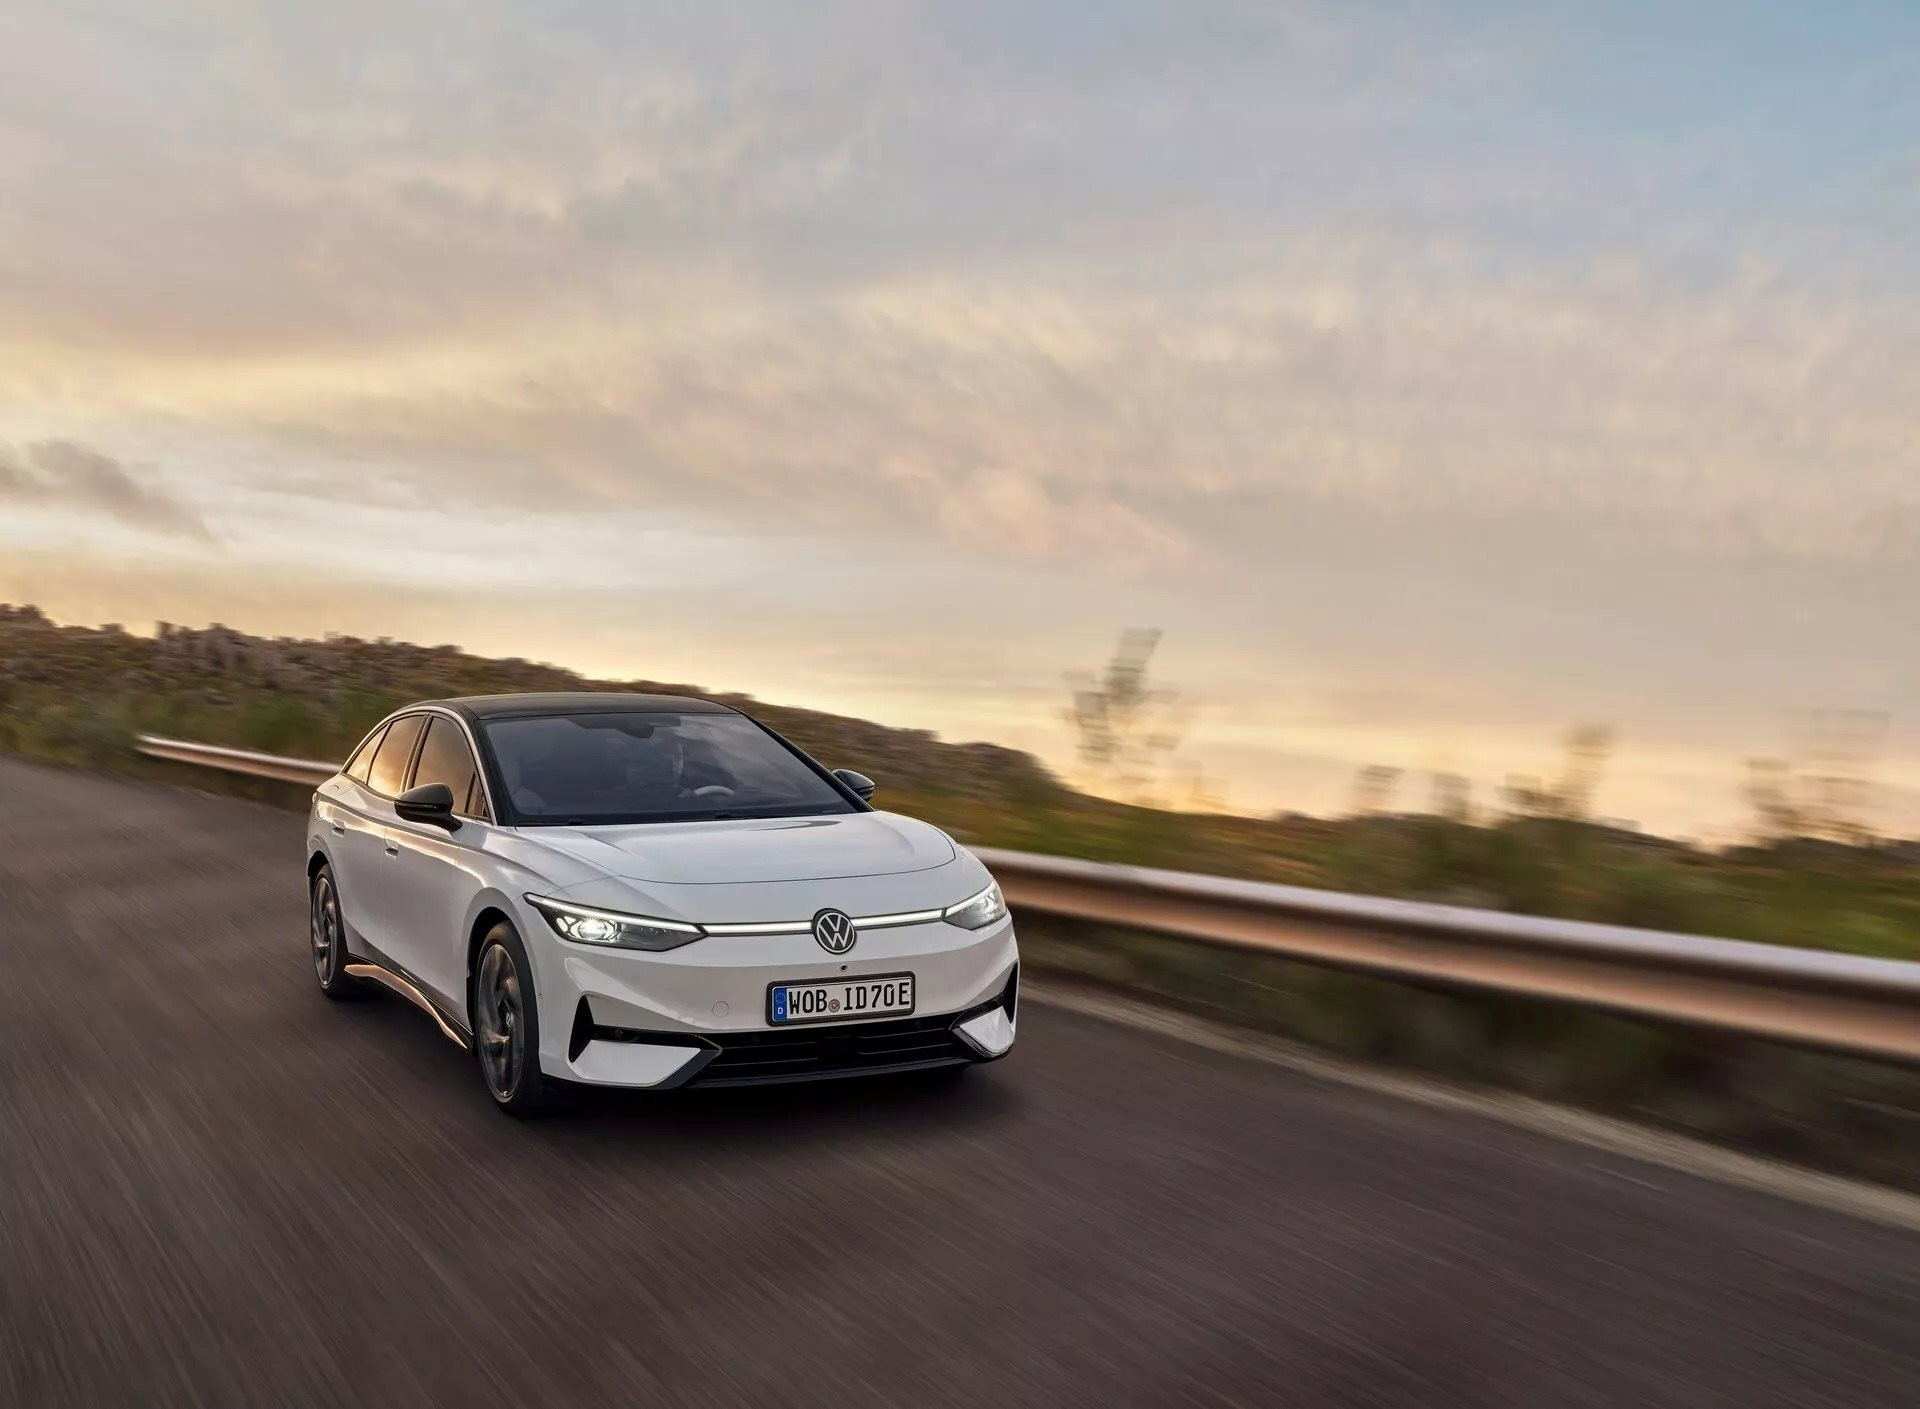 Nếu có ý định mua một chiếc ô tô điện trong 2 năm tới, bạn sẽ hối tiếc nếu bỏ qua mẫu Volkswagen đẹp ‘không tì vết’, tầm hoạt động lên đến 700 km này - Ảnh 5.